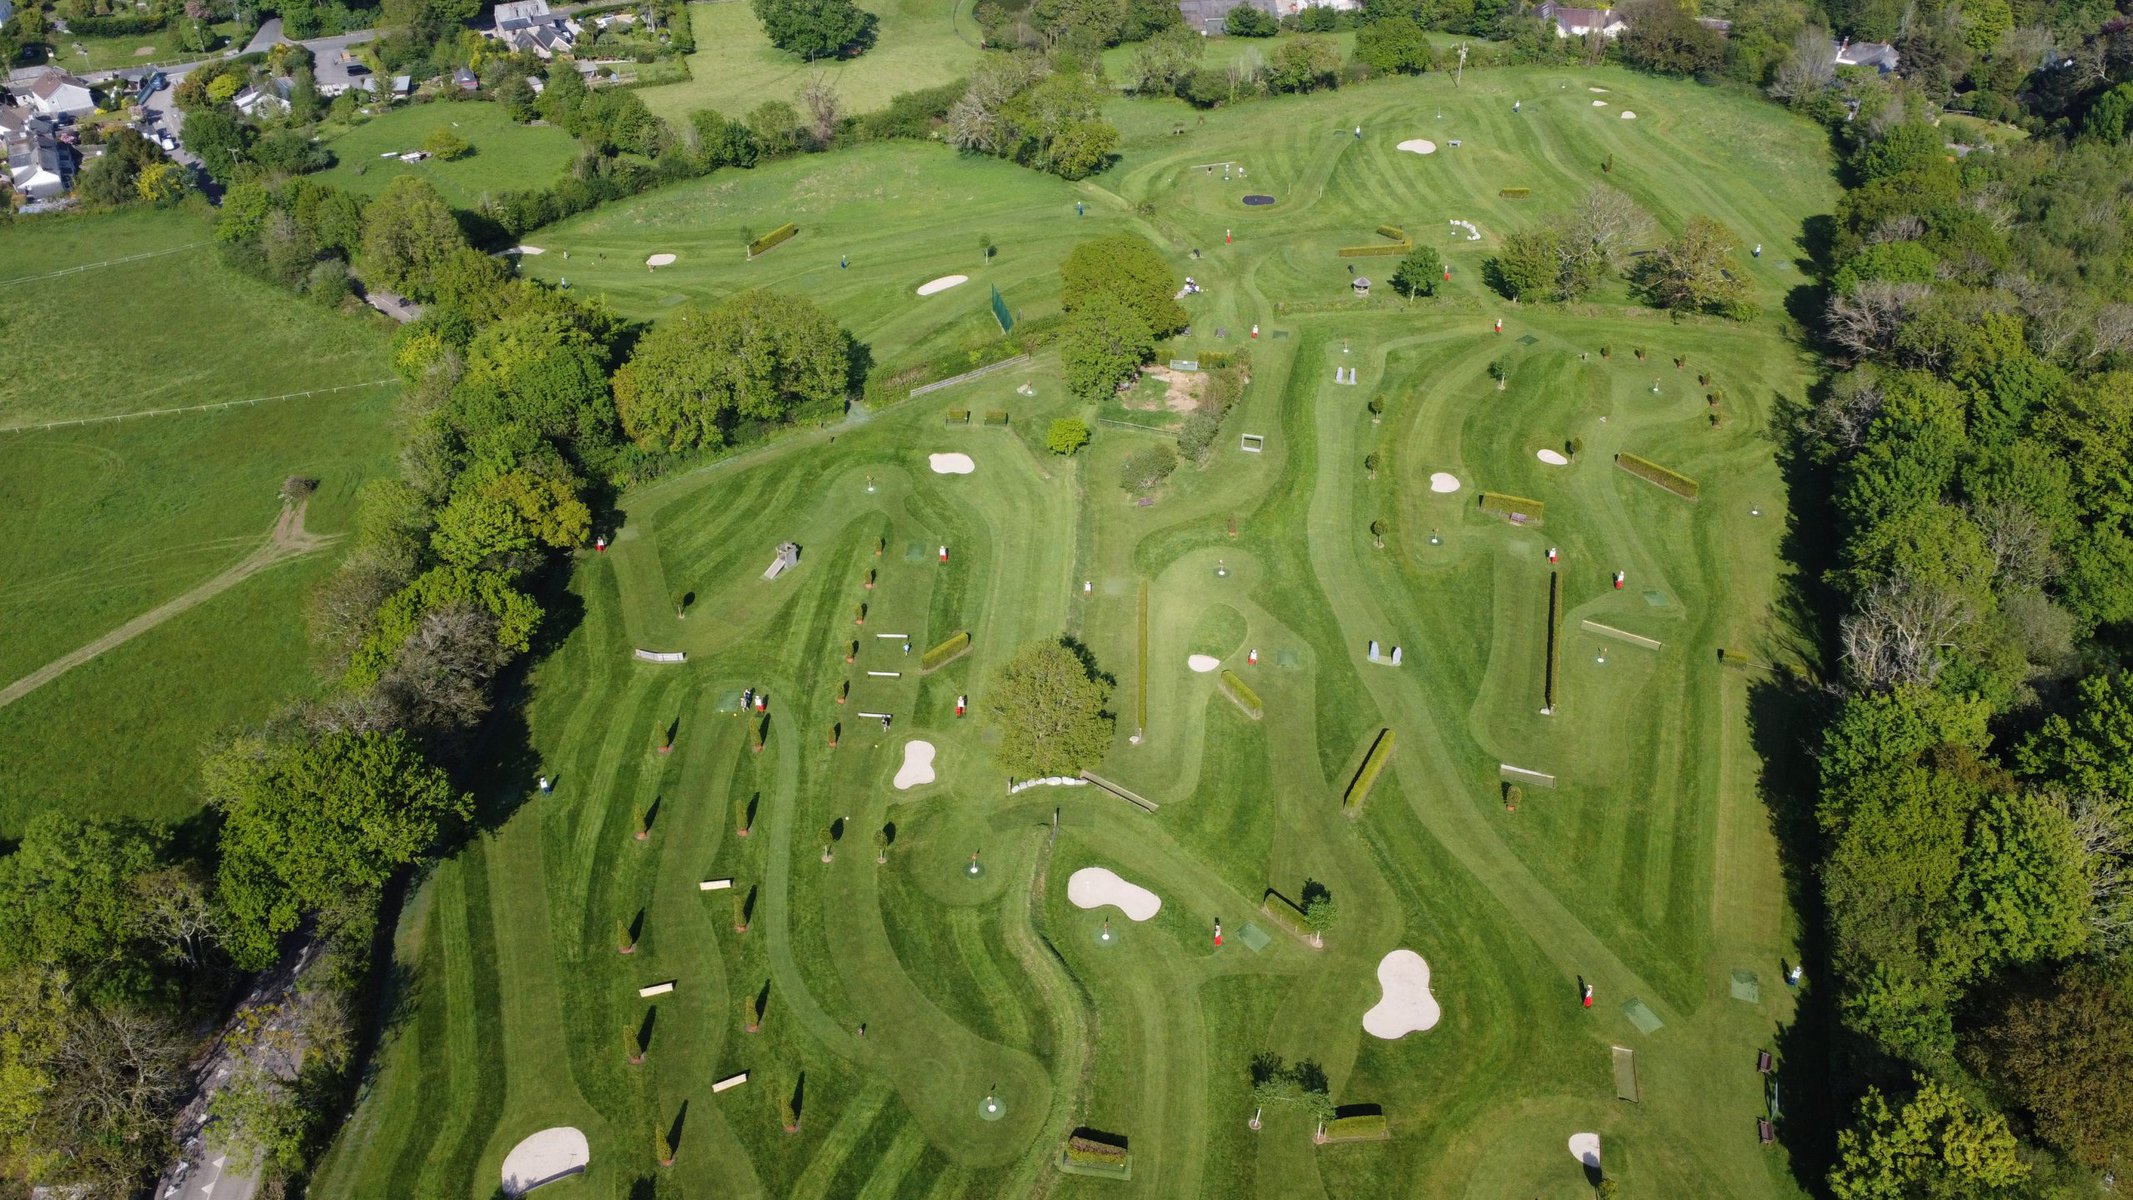 The Worlds best Football Golf Park - Cornwall Football Golf